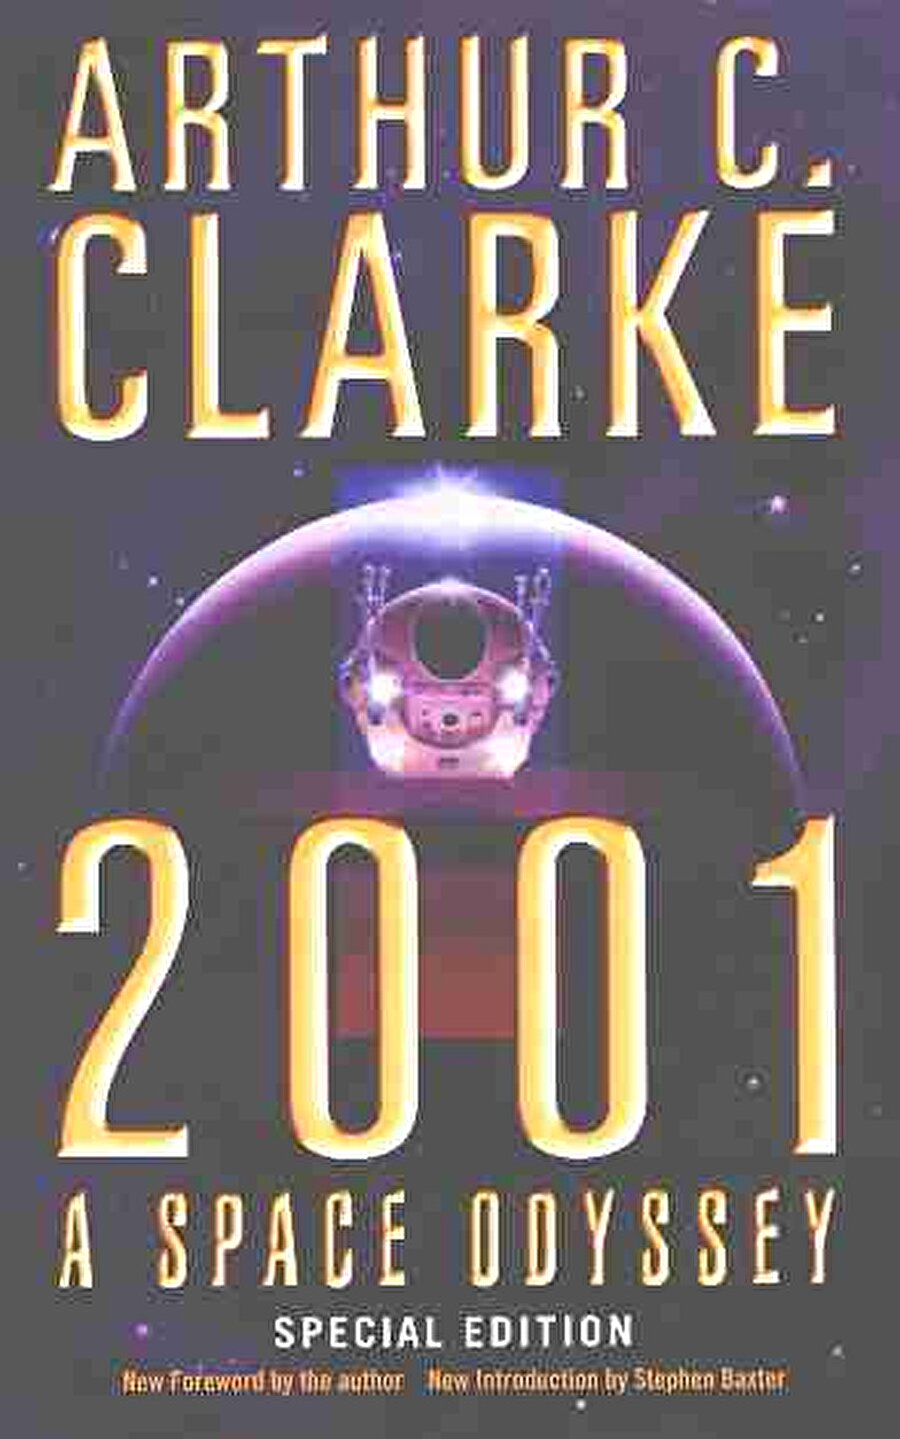 ARTHUR C. CLARKE - 2001
Dört kitaplık bir serinin ilk kitabı olan 2001, 1998'de yayımlandı. Filme de alınan kitap, Ay'a ayak basmanın henüz hayal olduğu bir dönemde yazılmış olmasına rağmen ve yüzyılımızın en olağanüstü ve çarpıcı senaryosuna sahip. 2001: Bir Uzay Efsanesi, insanın evrendeki yeri sorusuna cevap arıyor.